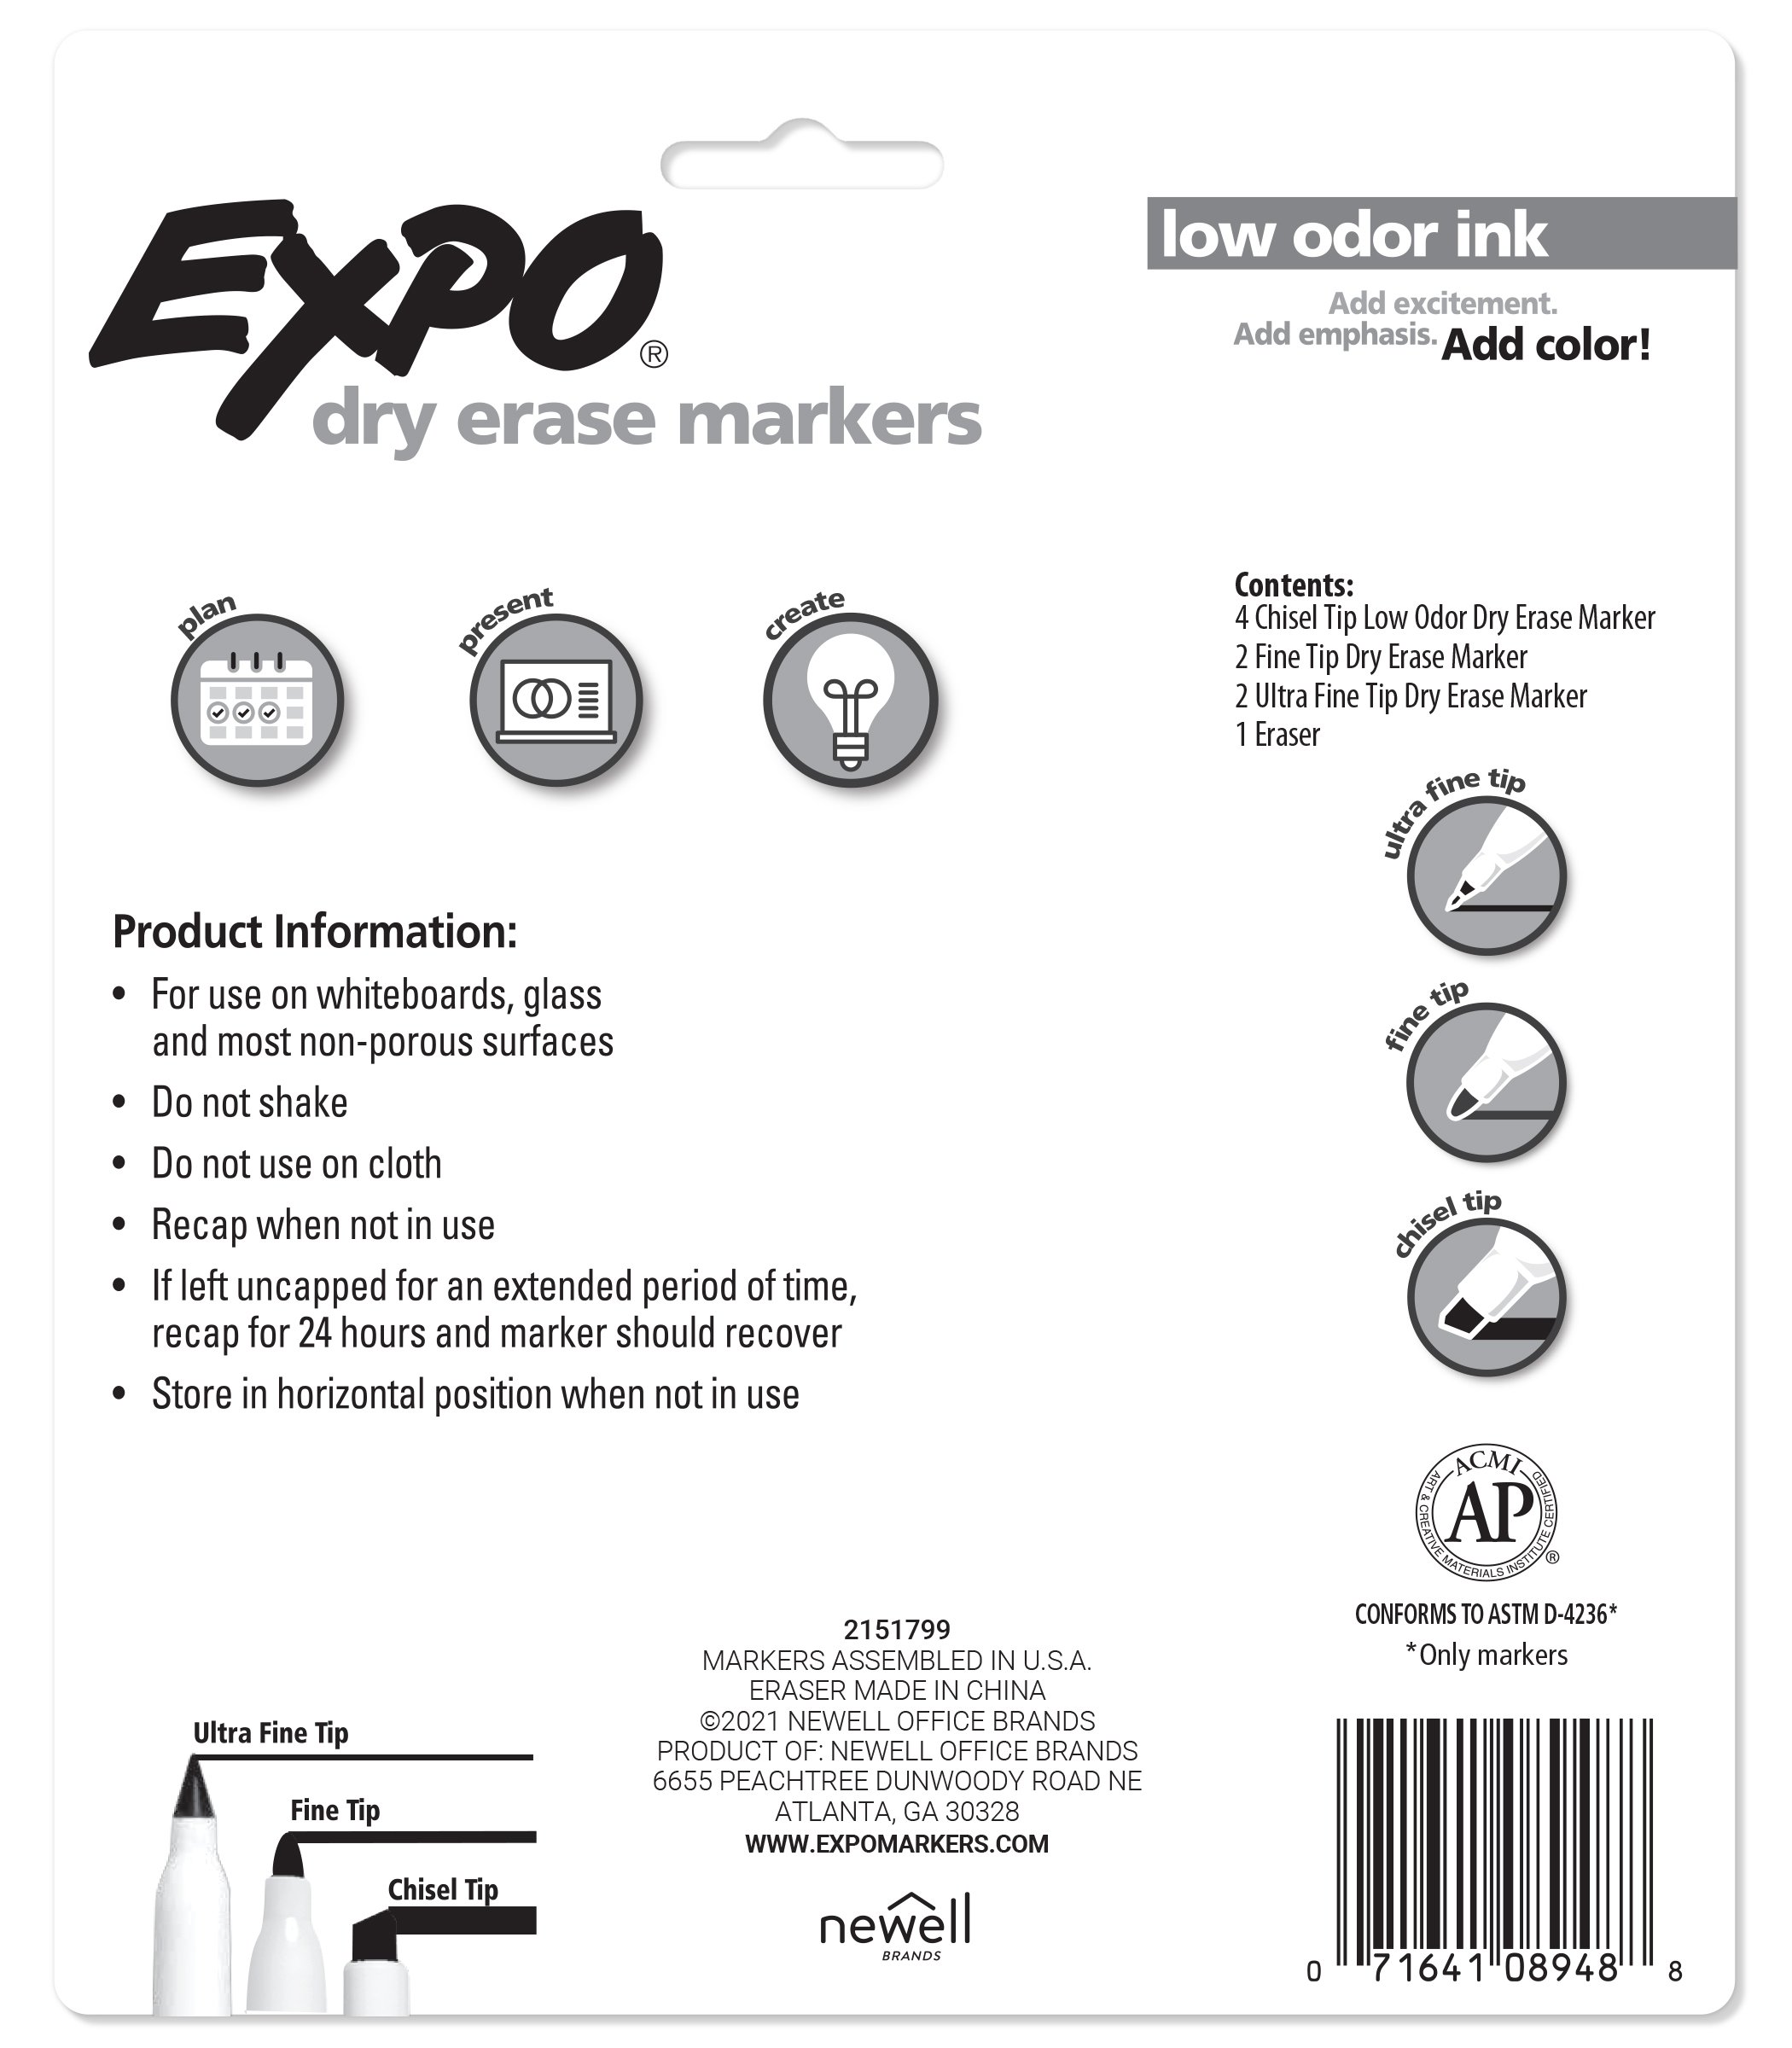 Chisel Tip Wet-Erase Markers: Where do ya get 'em??? : r/dndnext